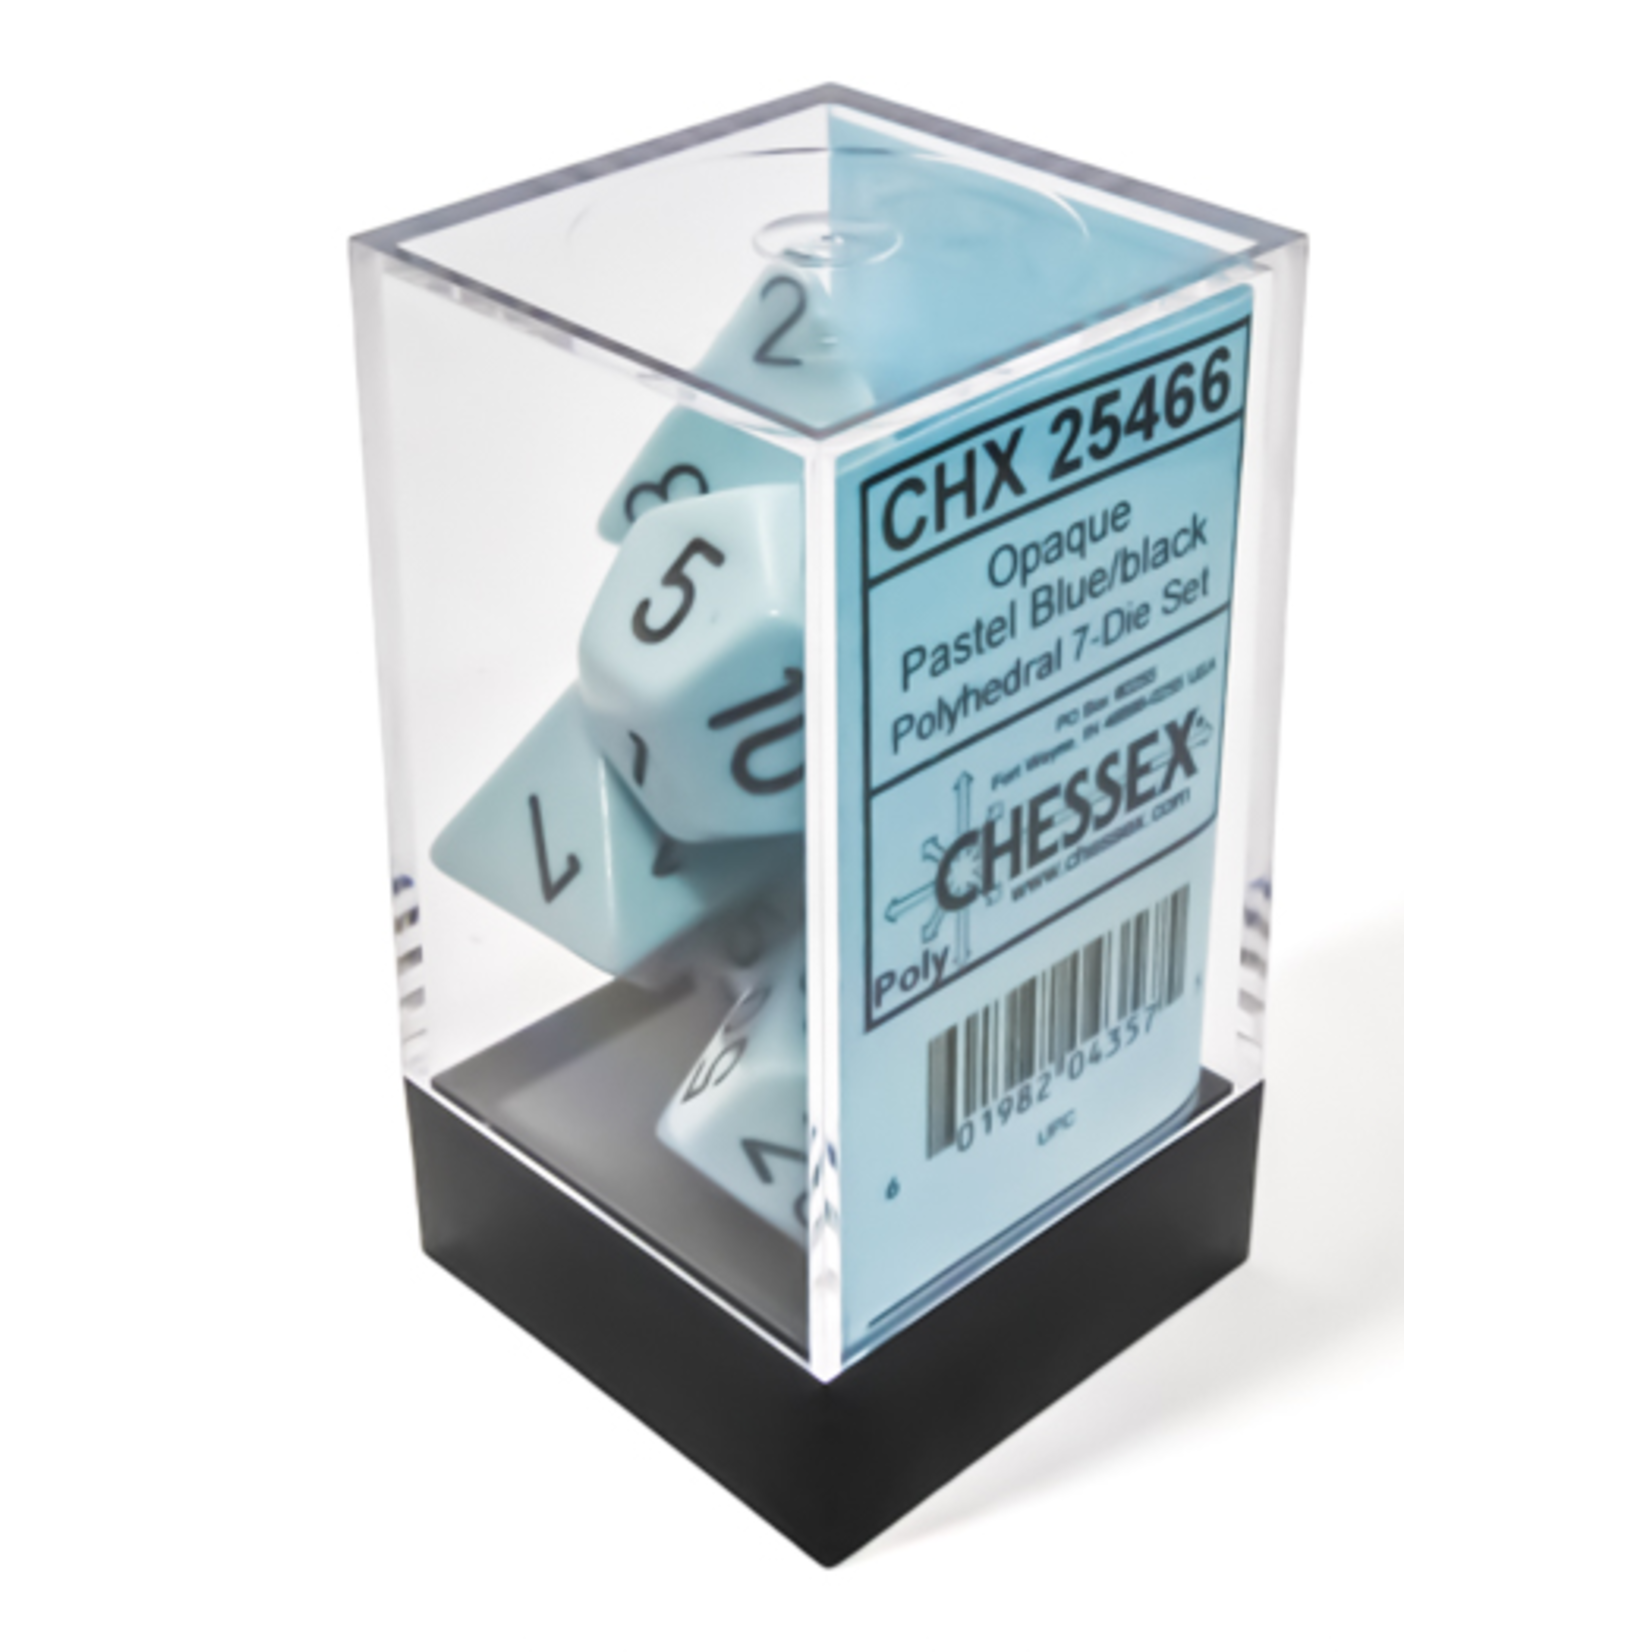 Chessex Opaque Pastel Blue/Black 7-die set